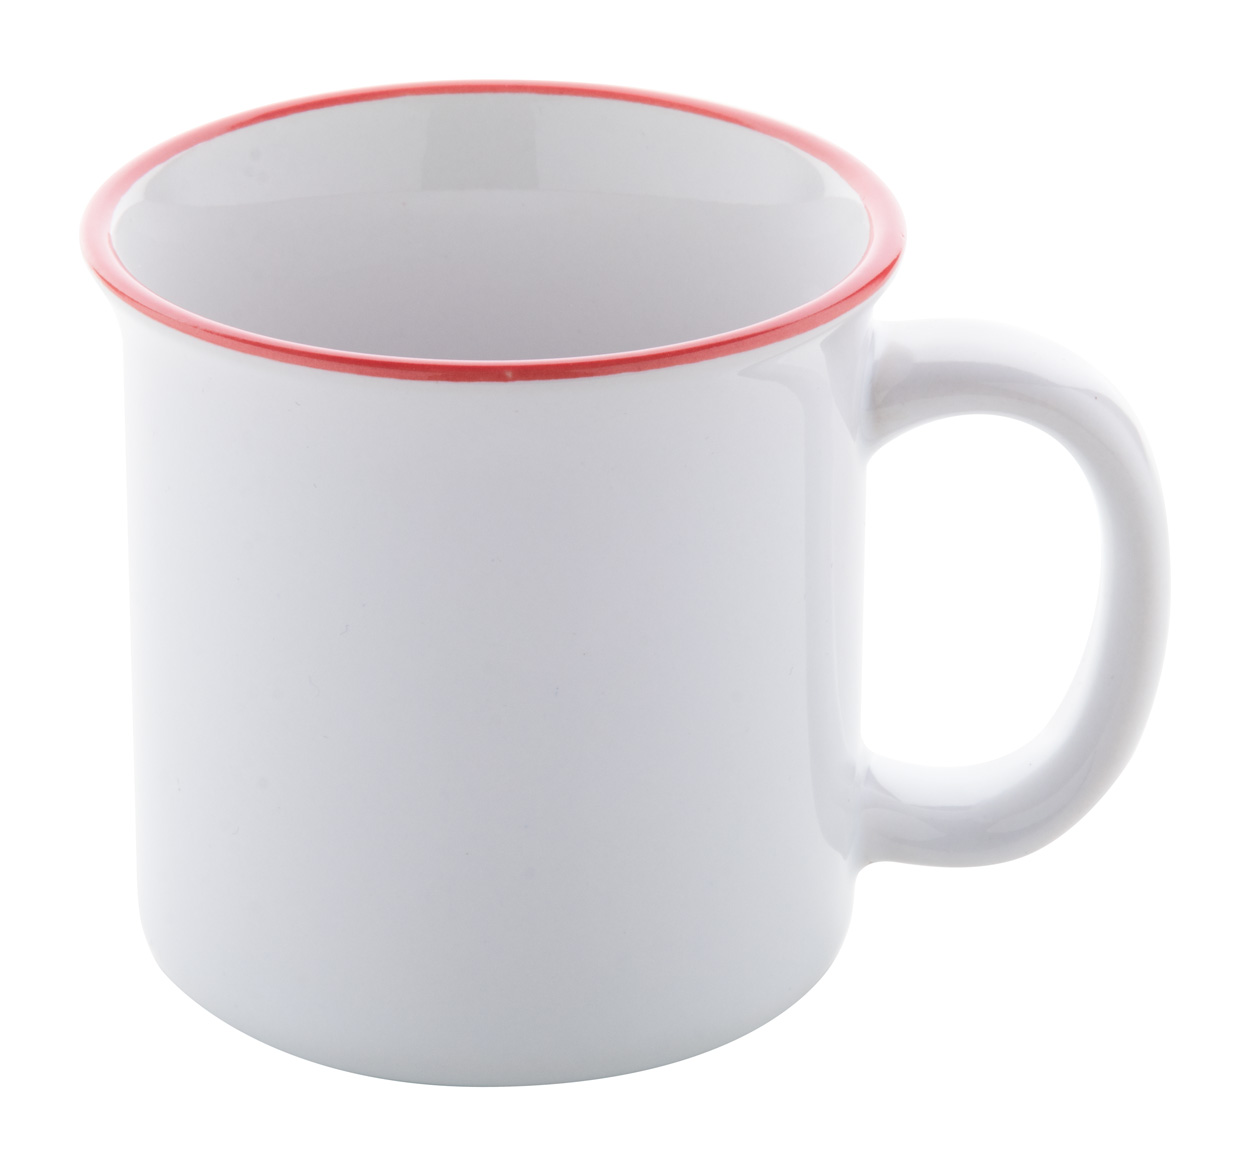 Gover vintage sublimation mug red